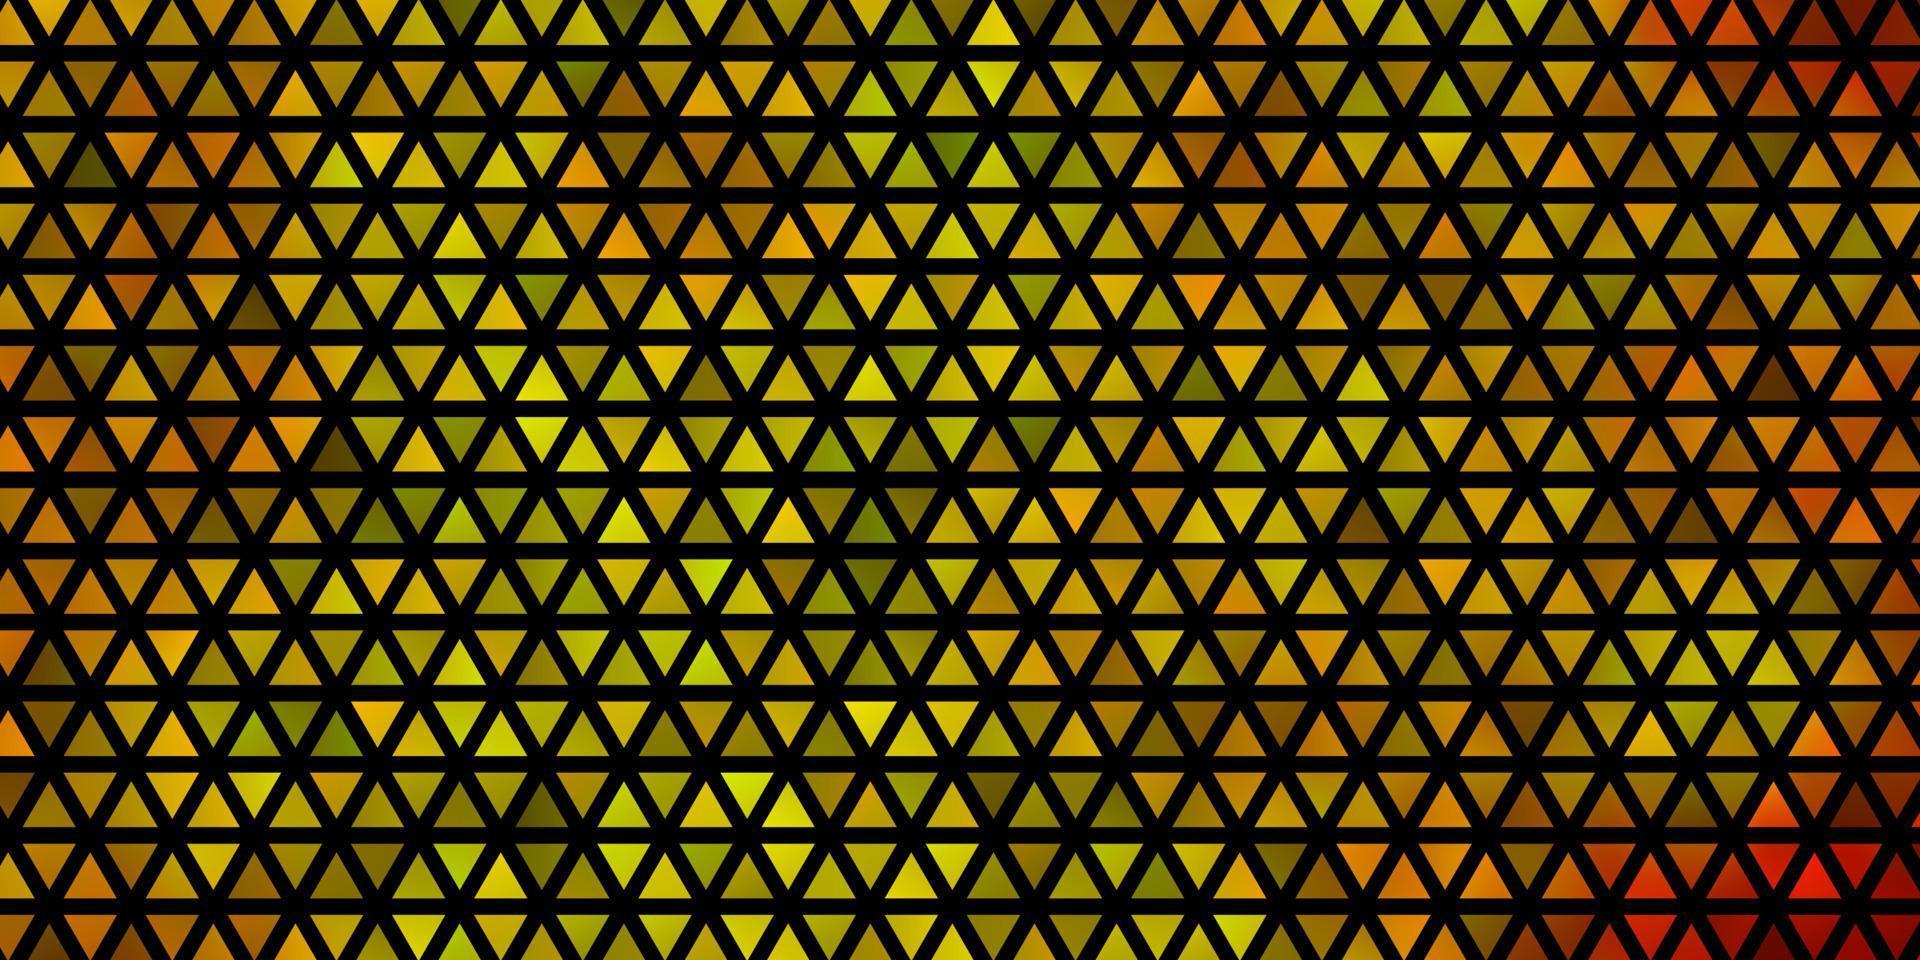 ljus orange vektormall med kristaller, trianglar. vektor